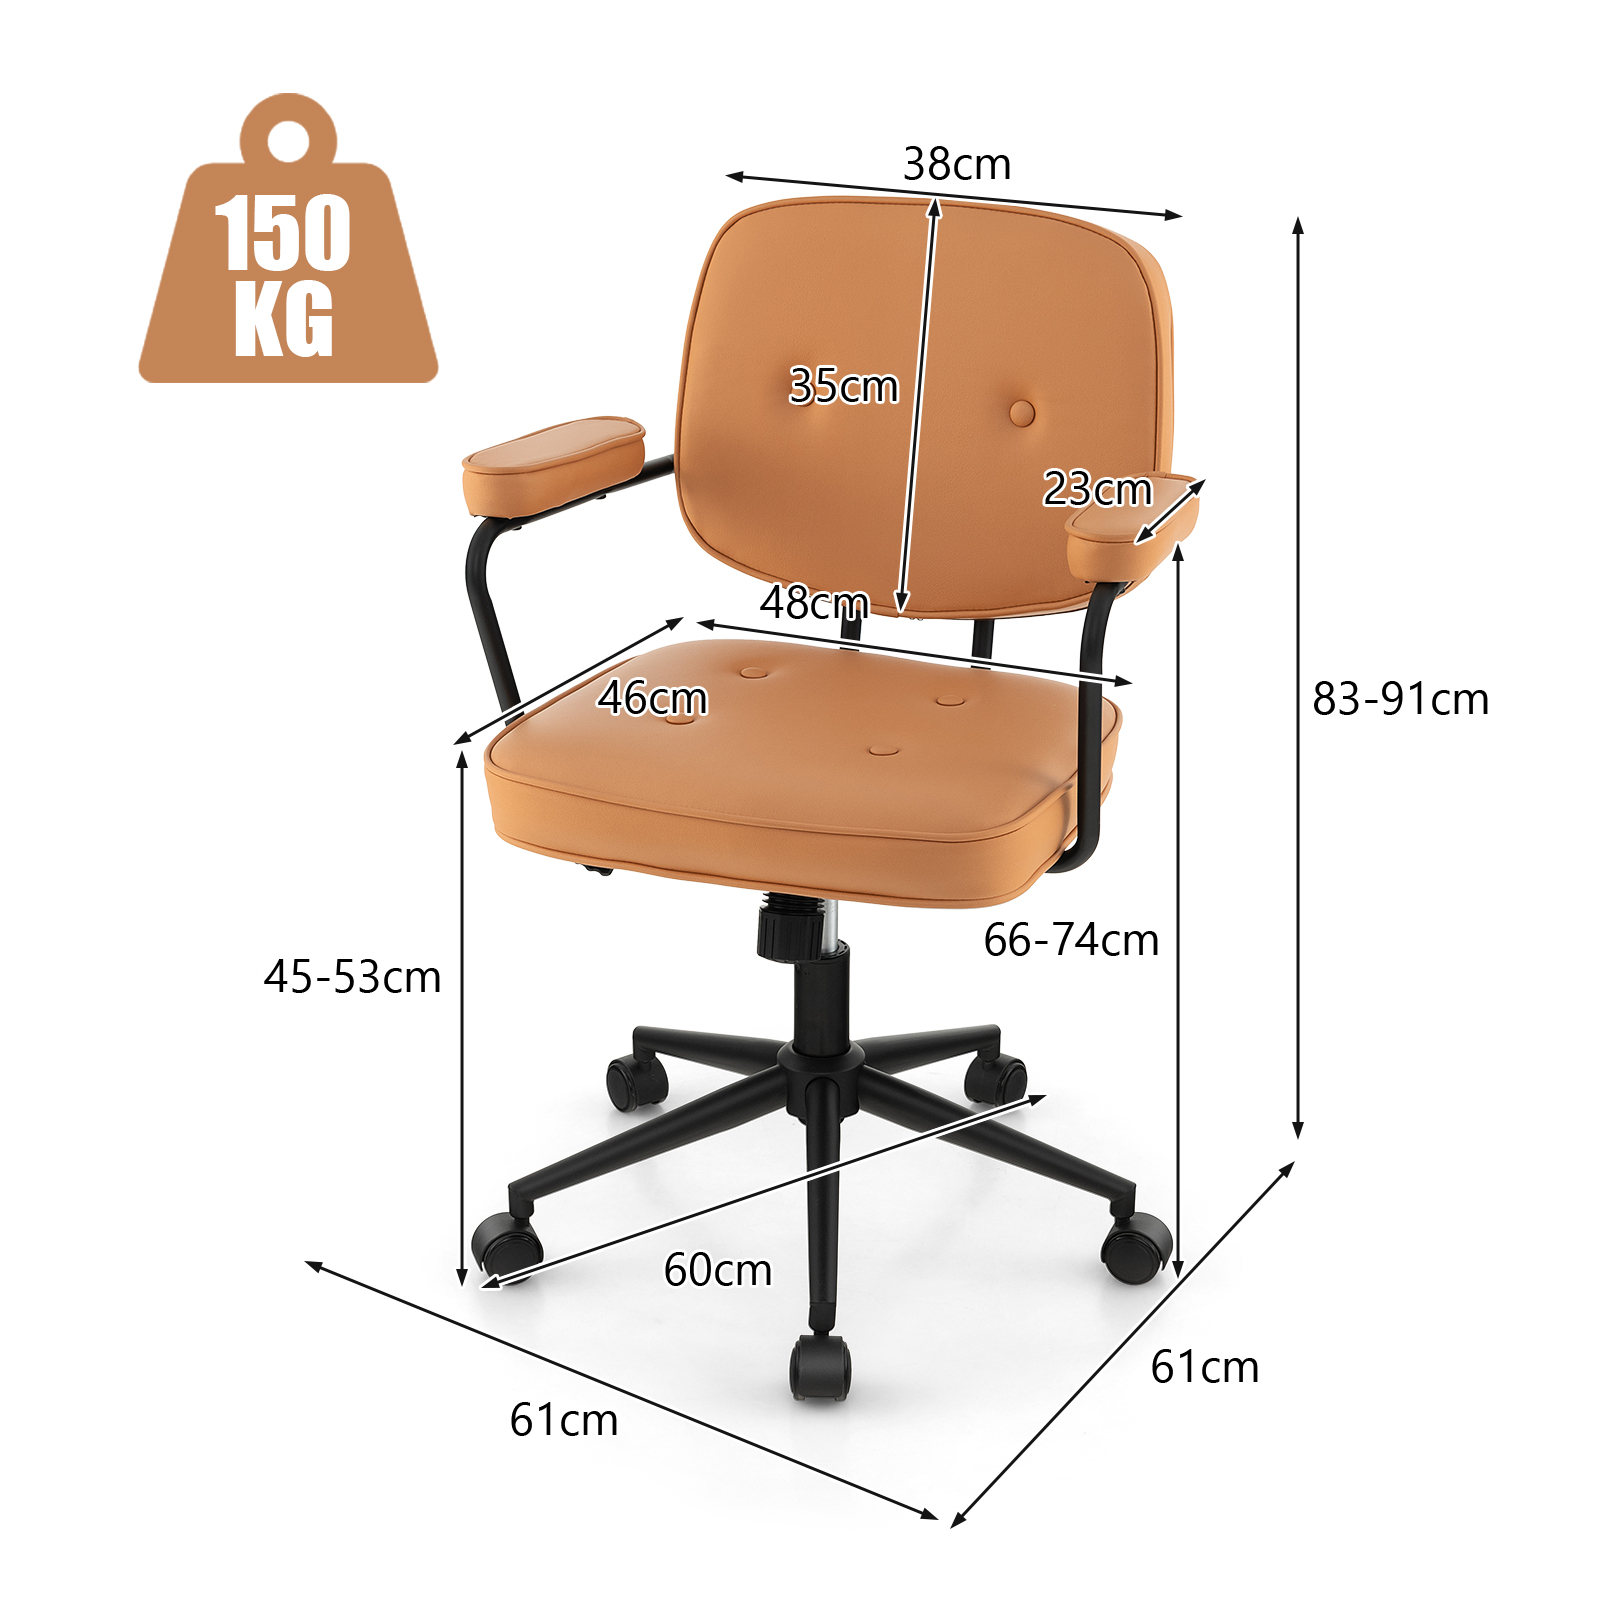 Upholstered_Swivel_Task_Chair_with_Rocking_Backrest_Orange-4.jpg